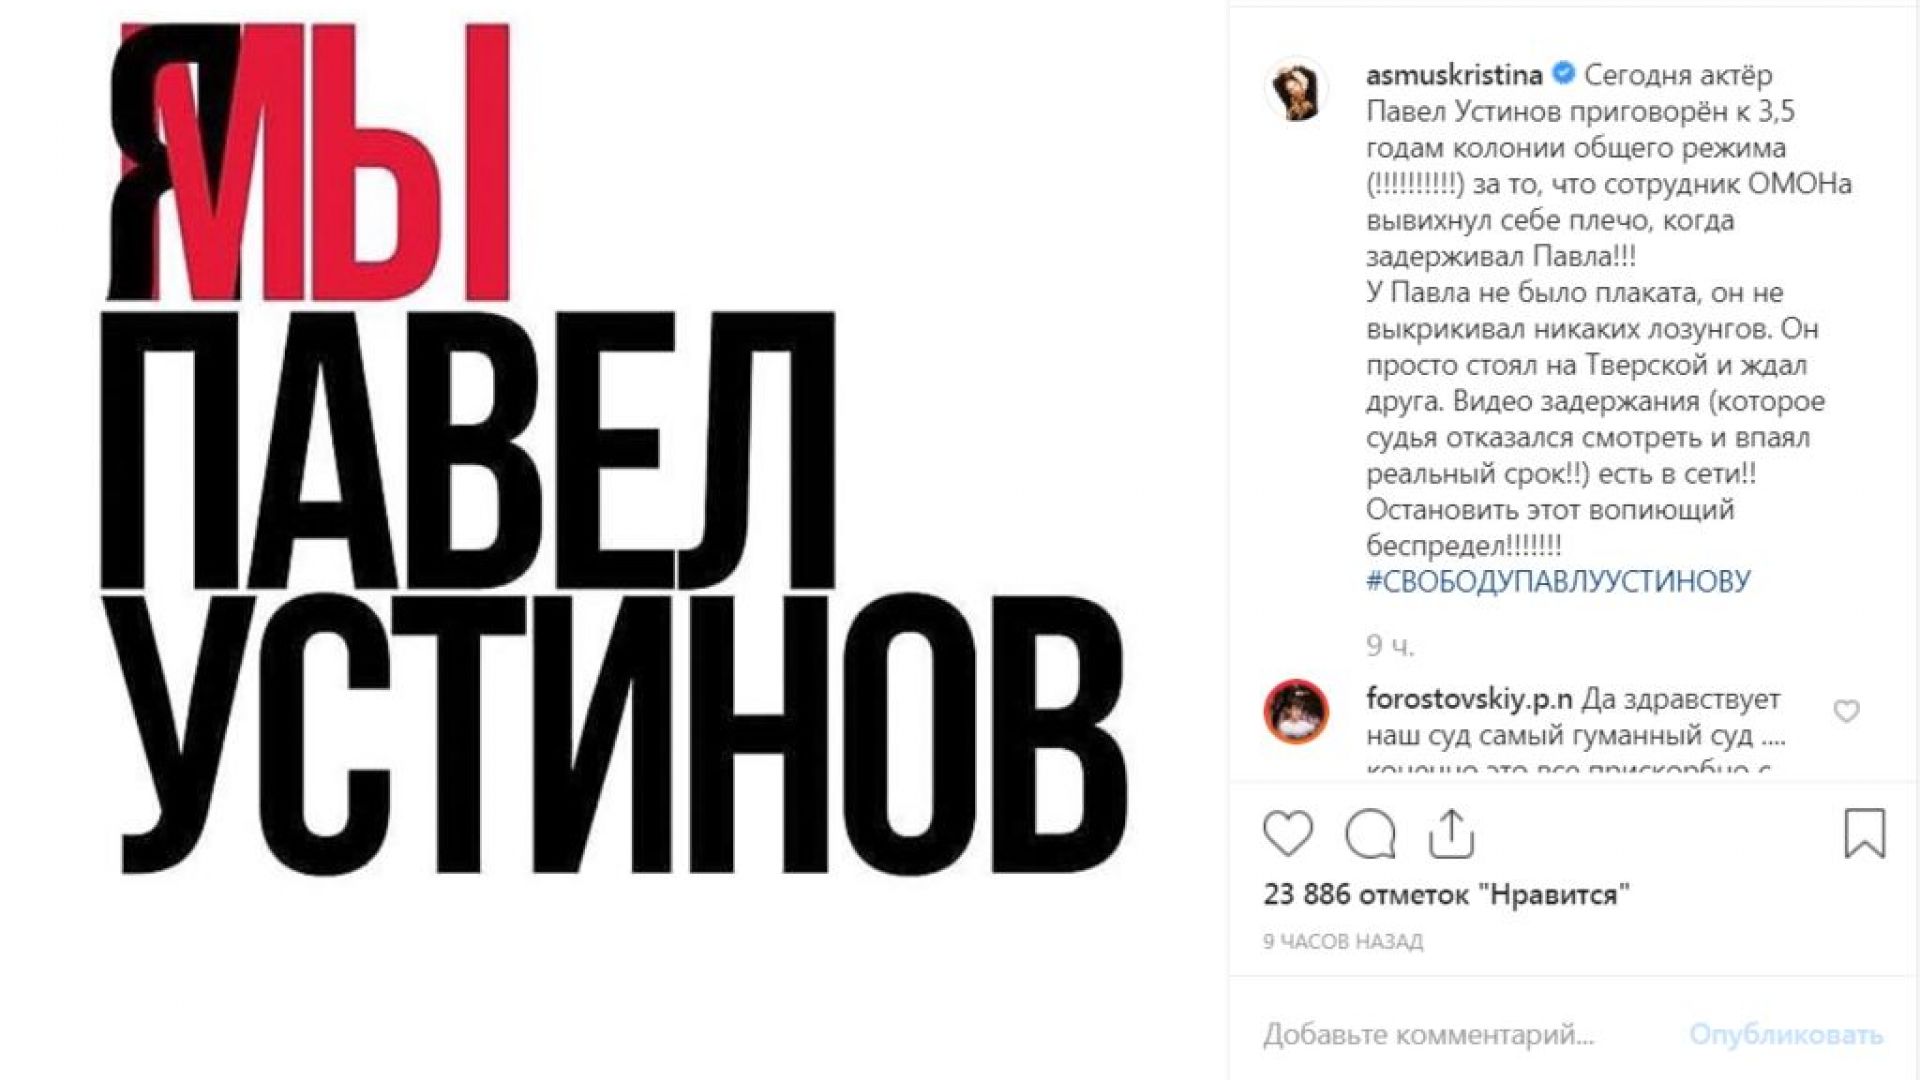 Руски знаменитости подкрепиха млад актьор, осъден на затвор след протест (видео)